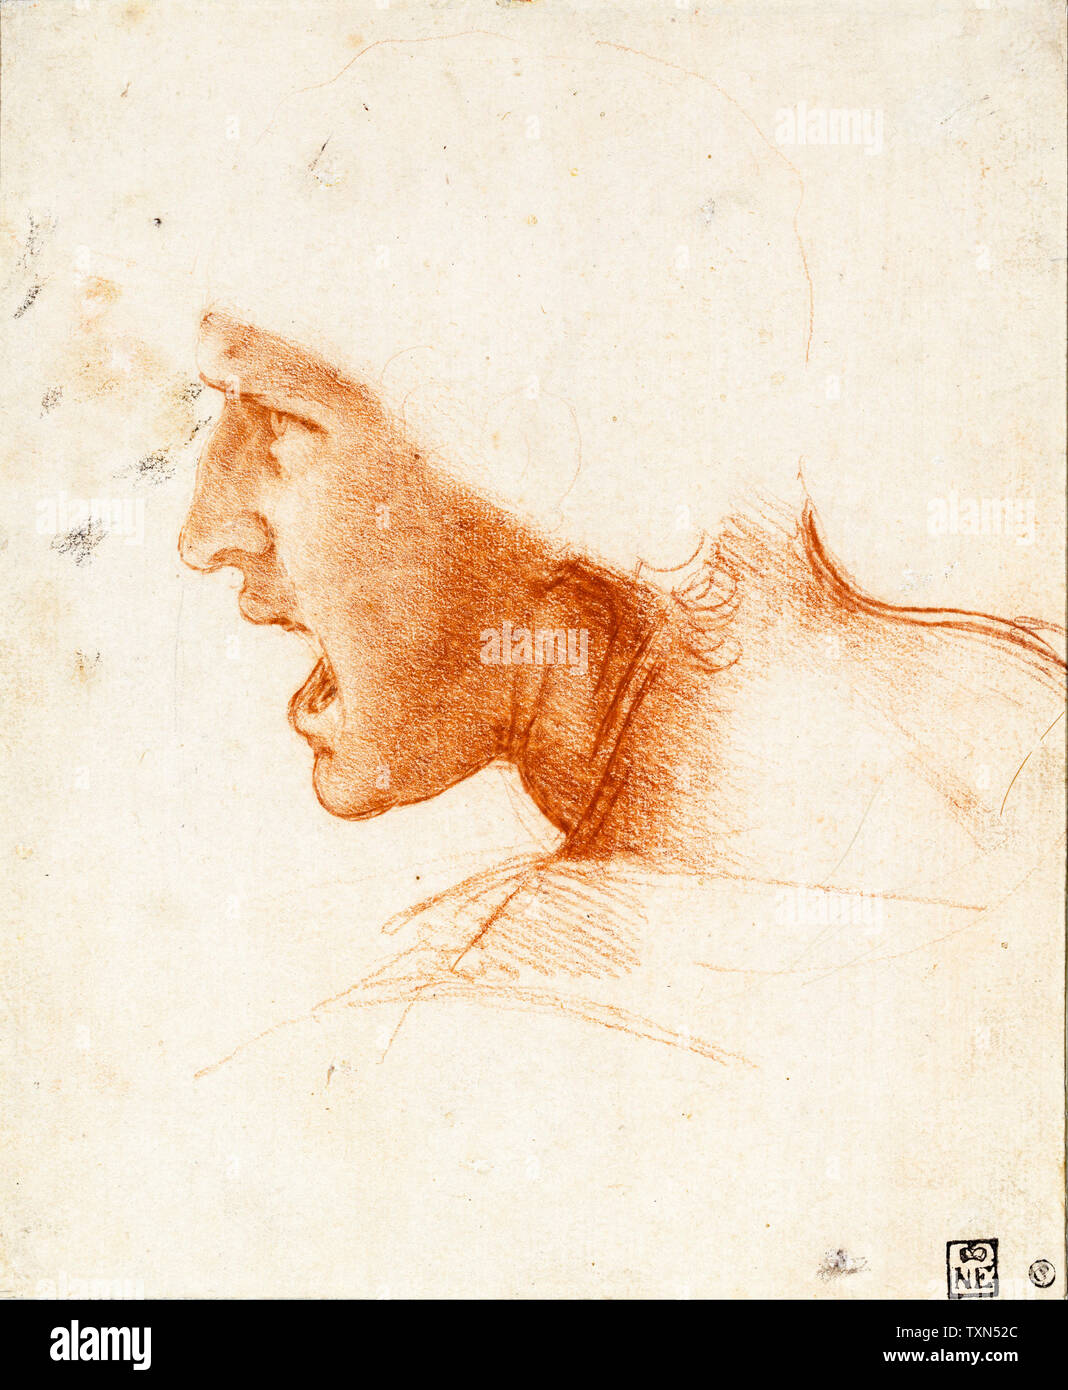 Leonardo Da Vinci, Study of a Warrior's Head for the Battle of Anghiari, drawing, circa 1504 Stock Photo